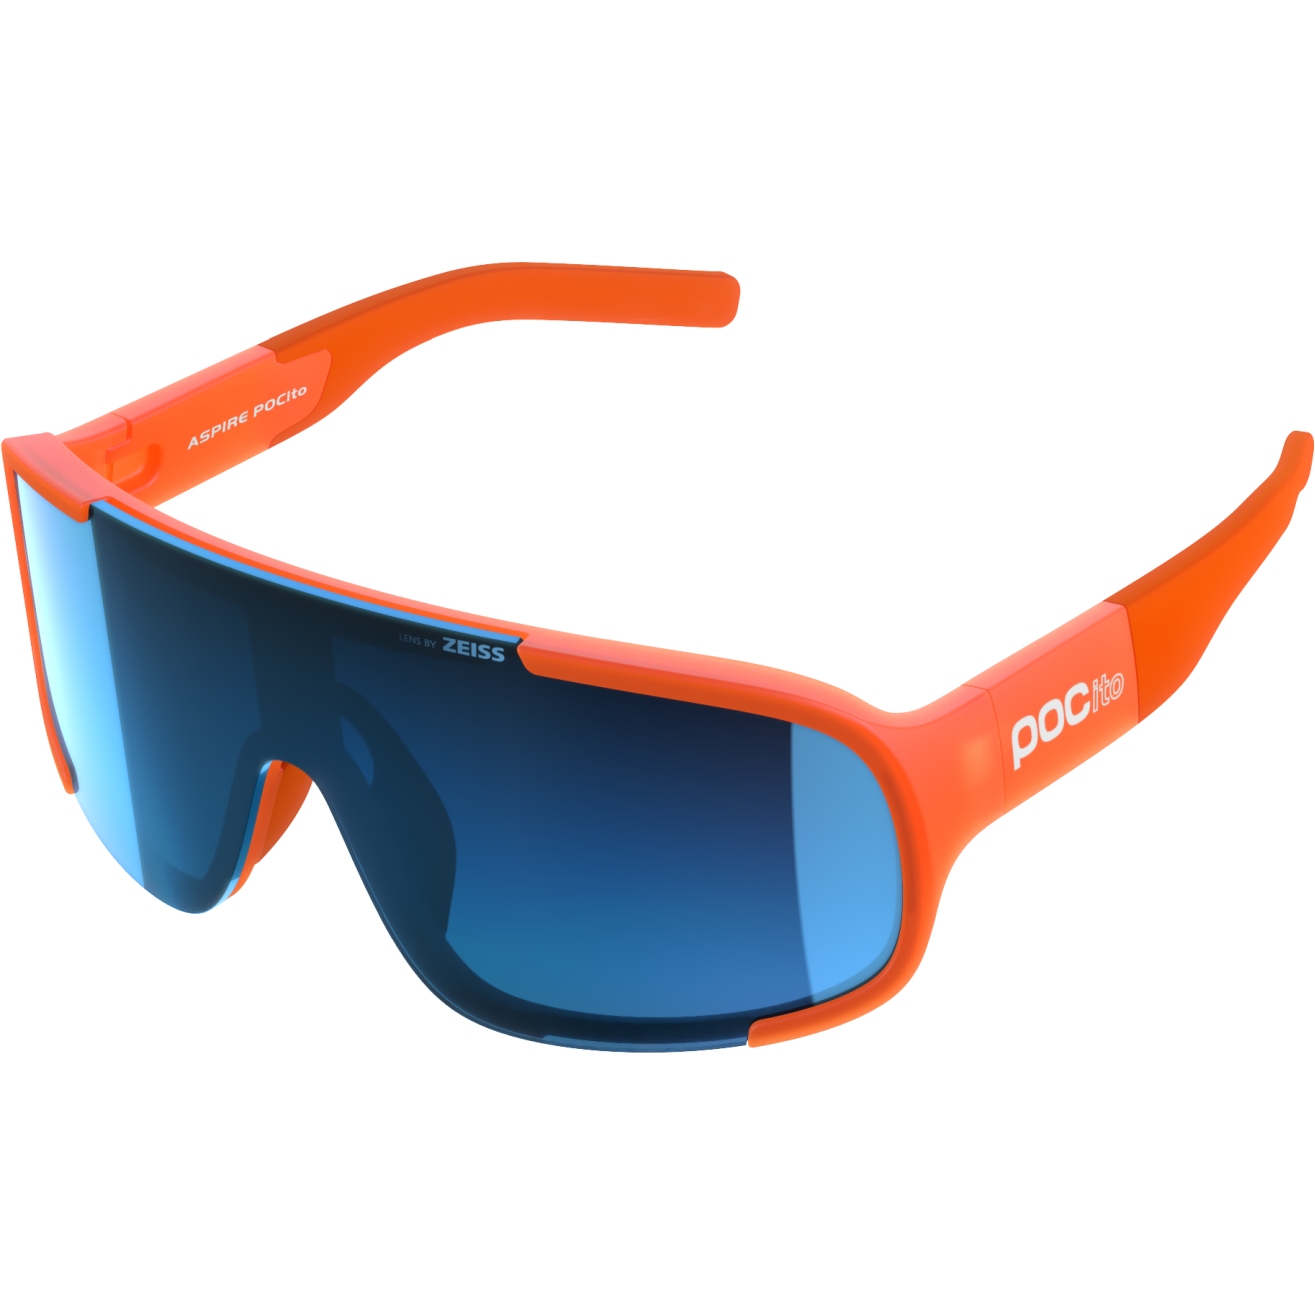 Produktbild von POC Aspire POCito Brille - 1230 Fluorescent Orange Translucent / Equalizer Grey/Space Blue Mirror